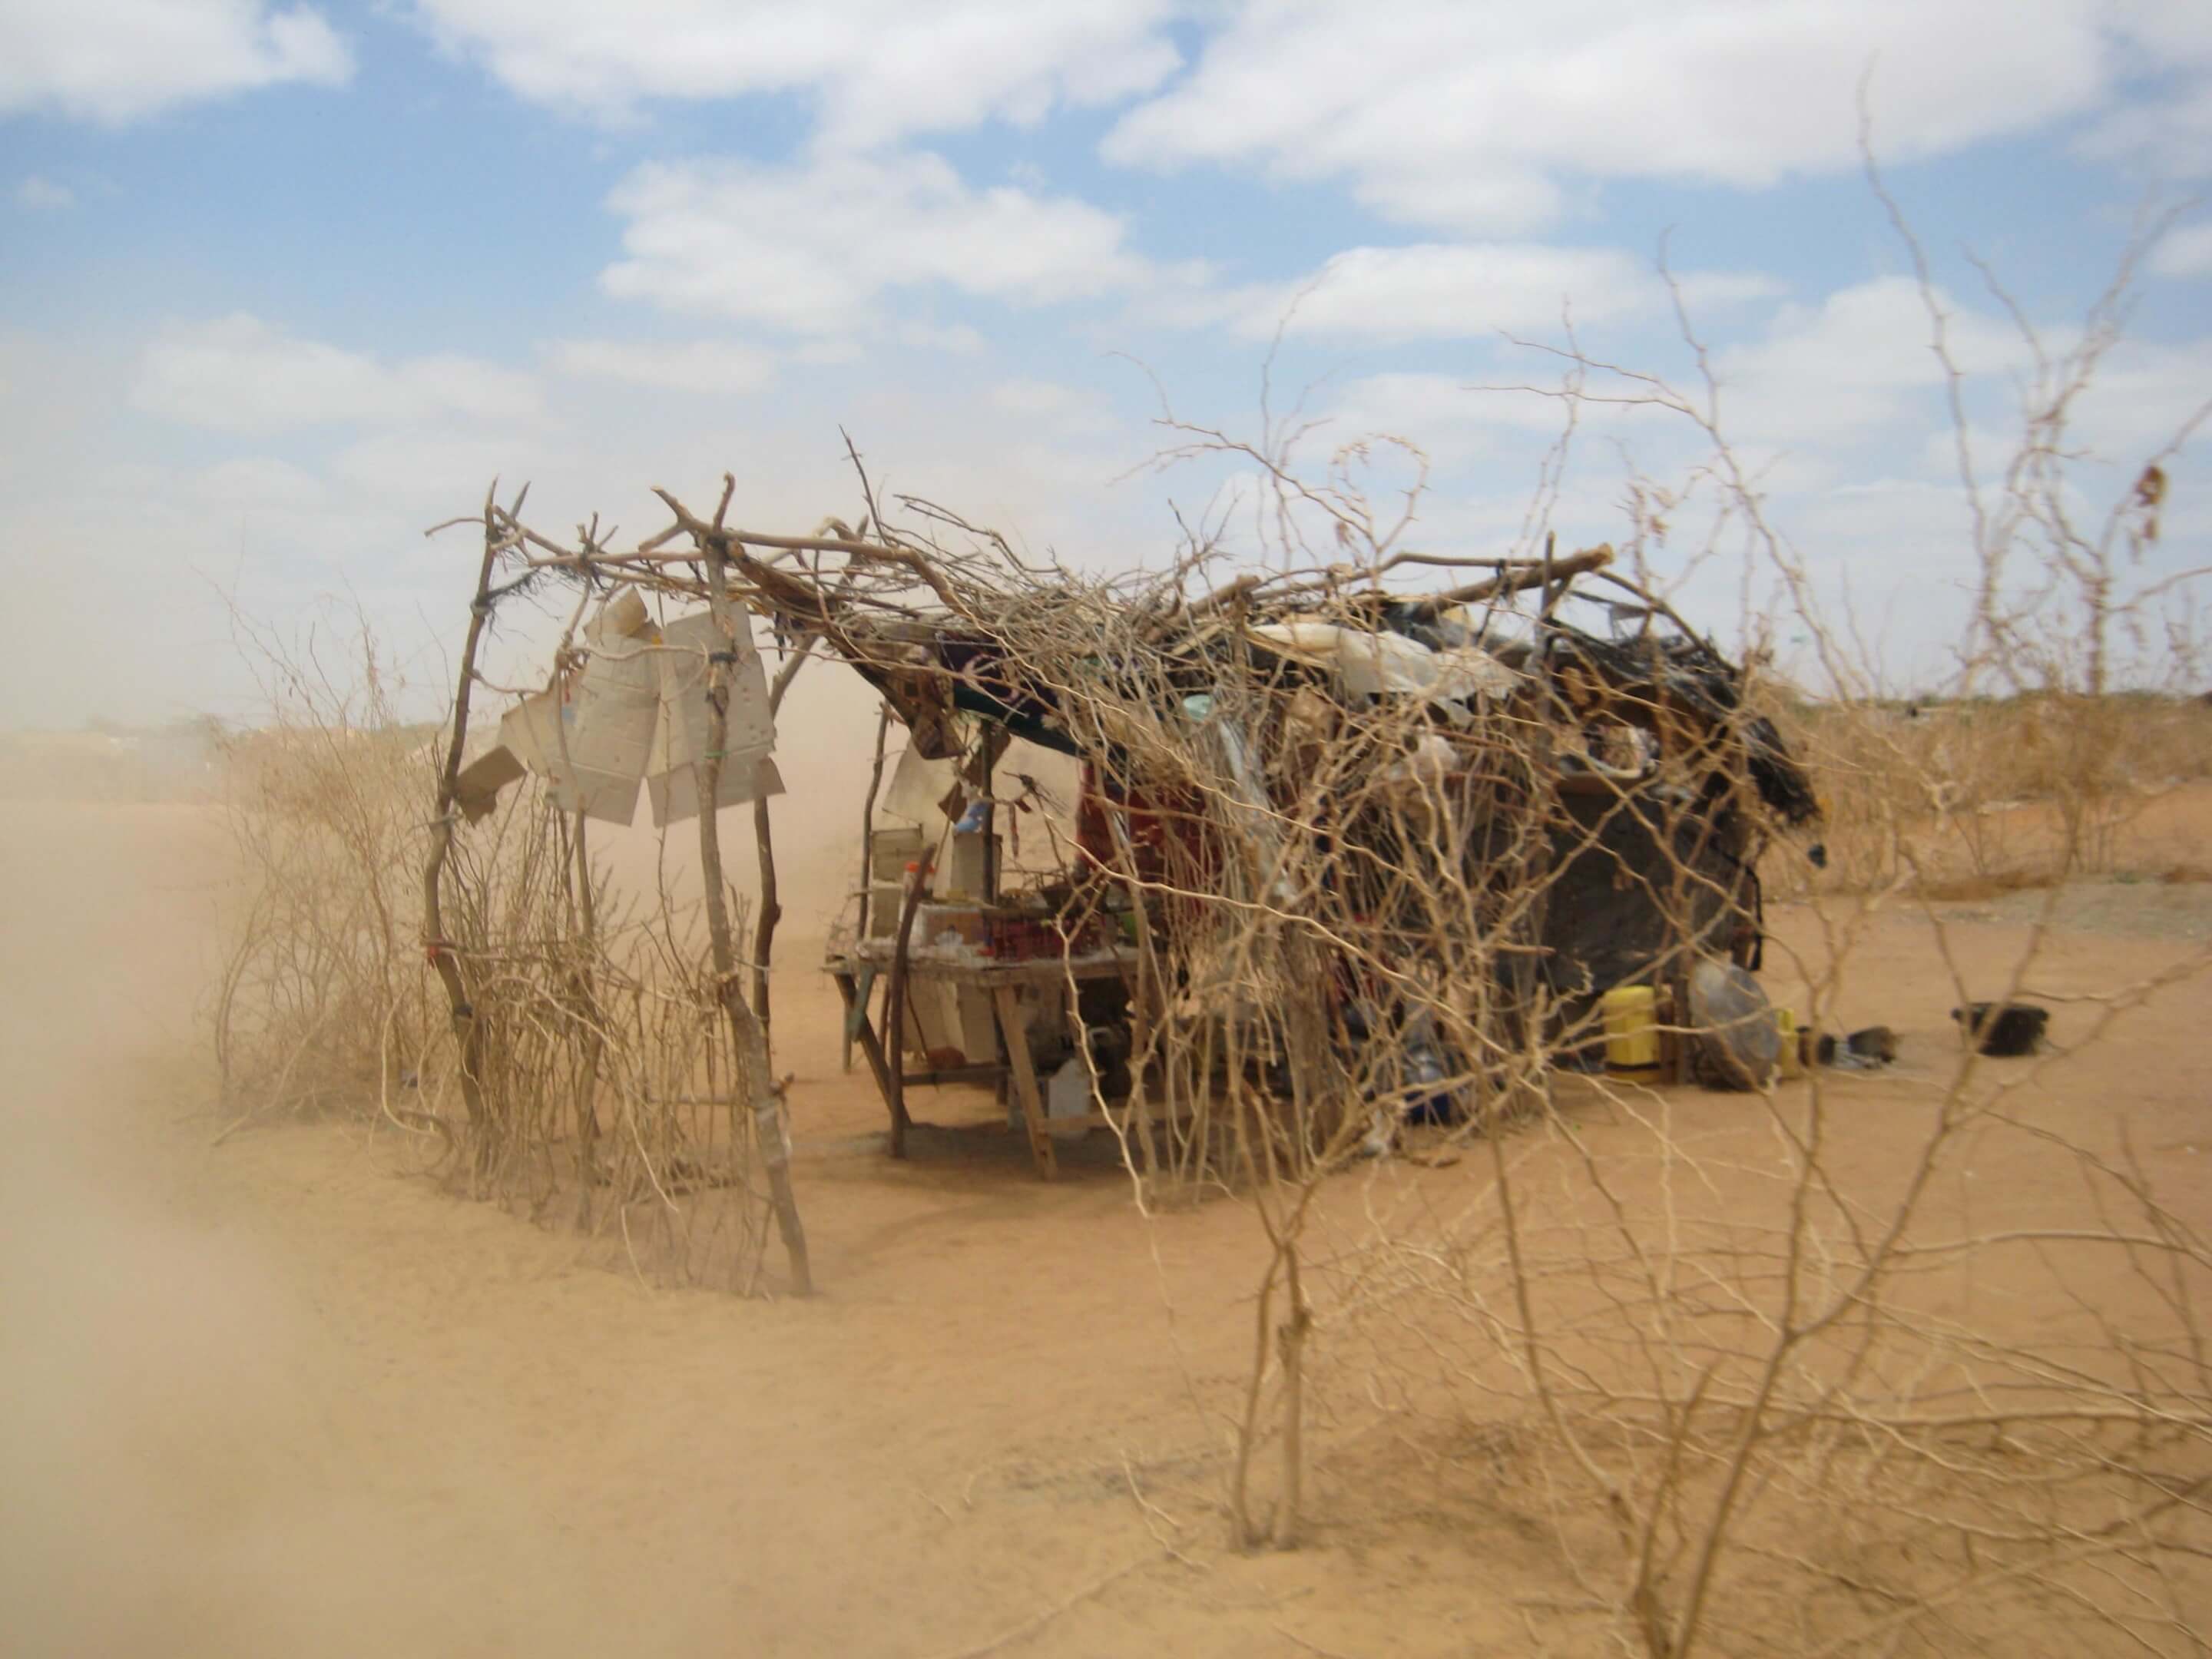 a makeshift shelter in the desert